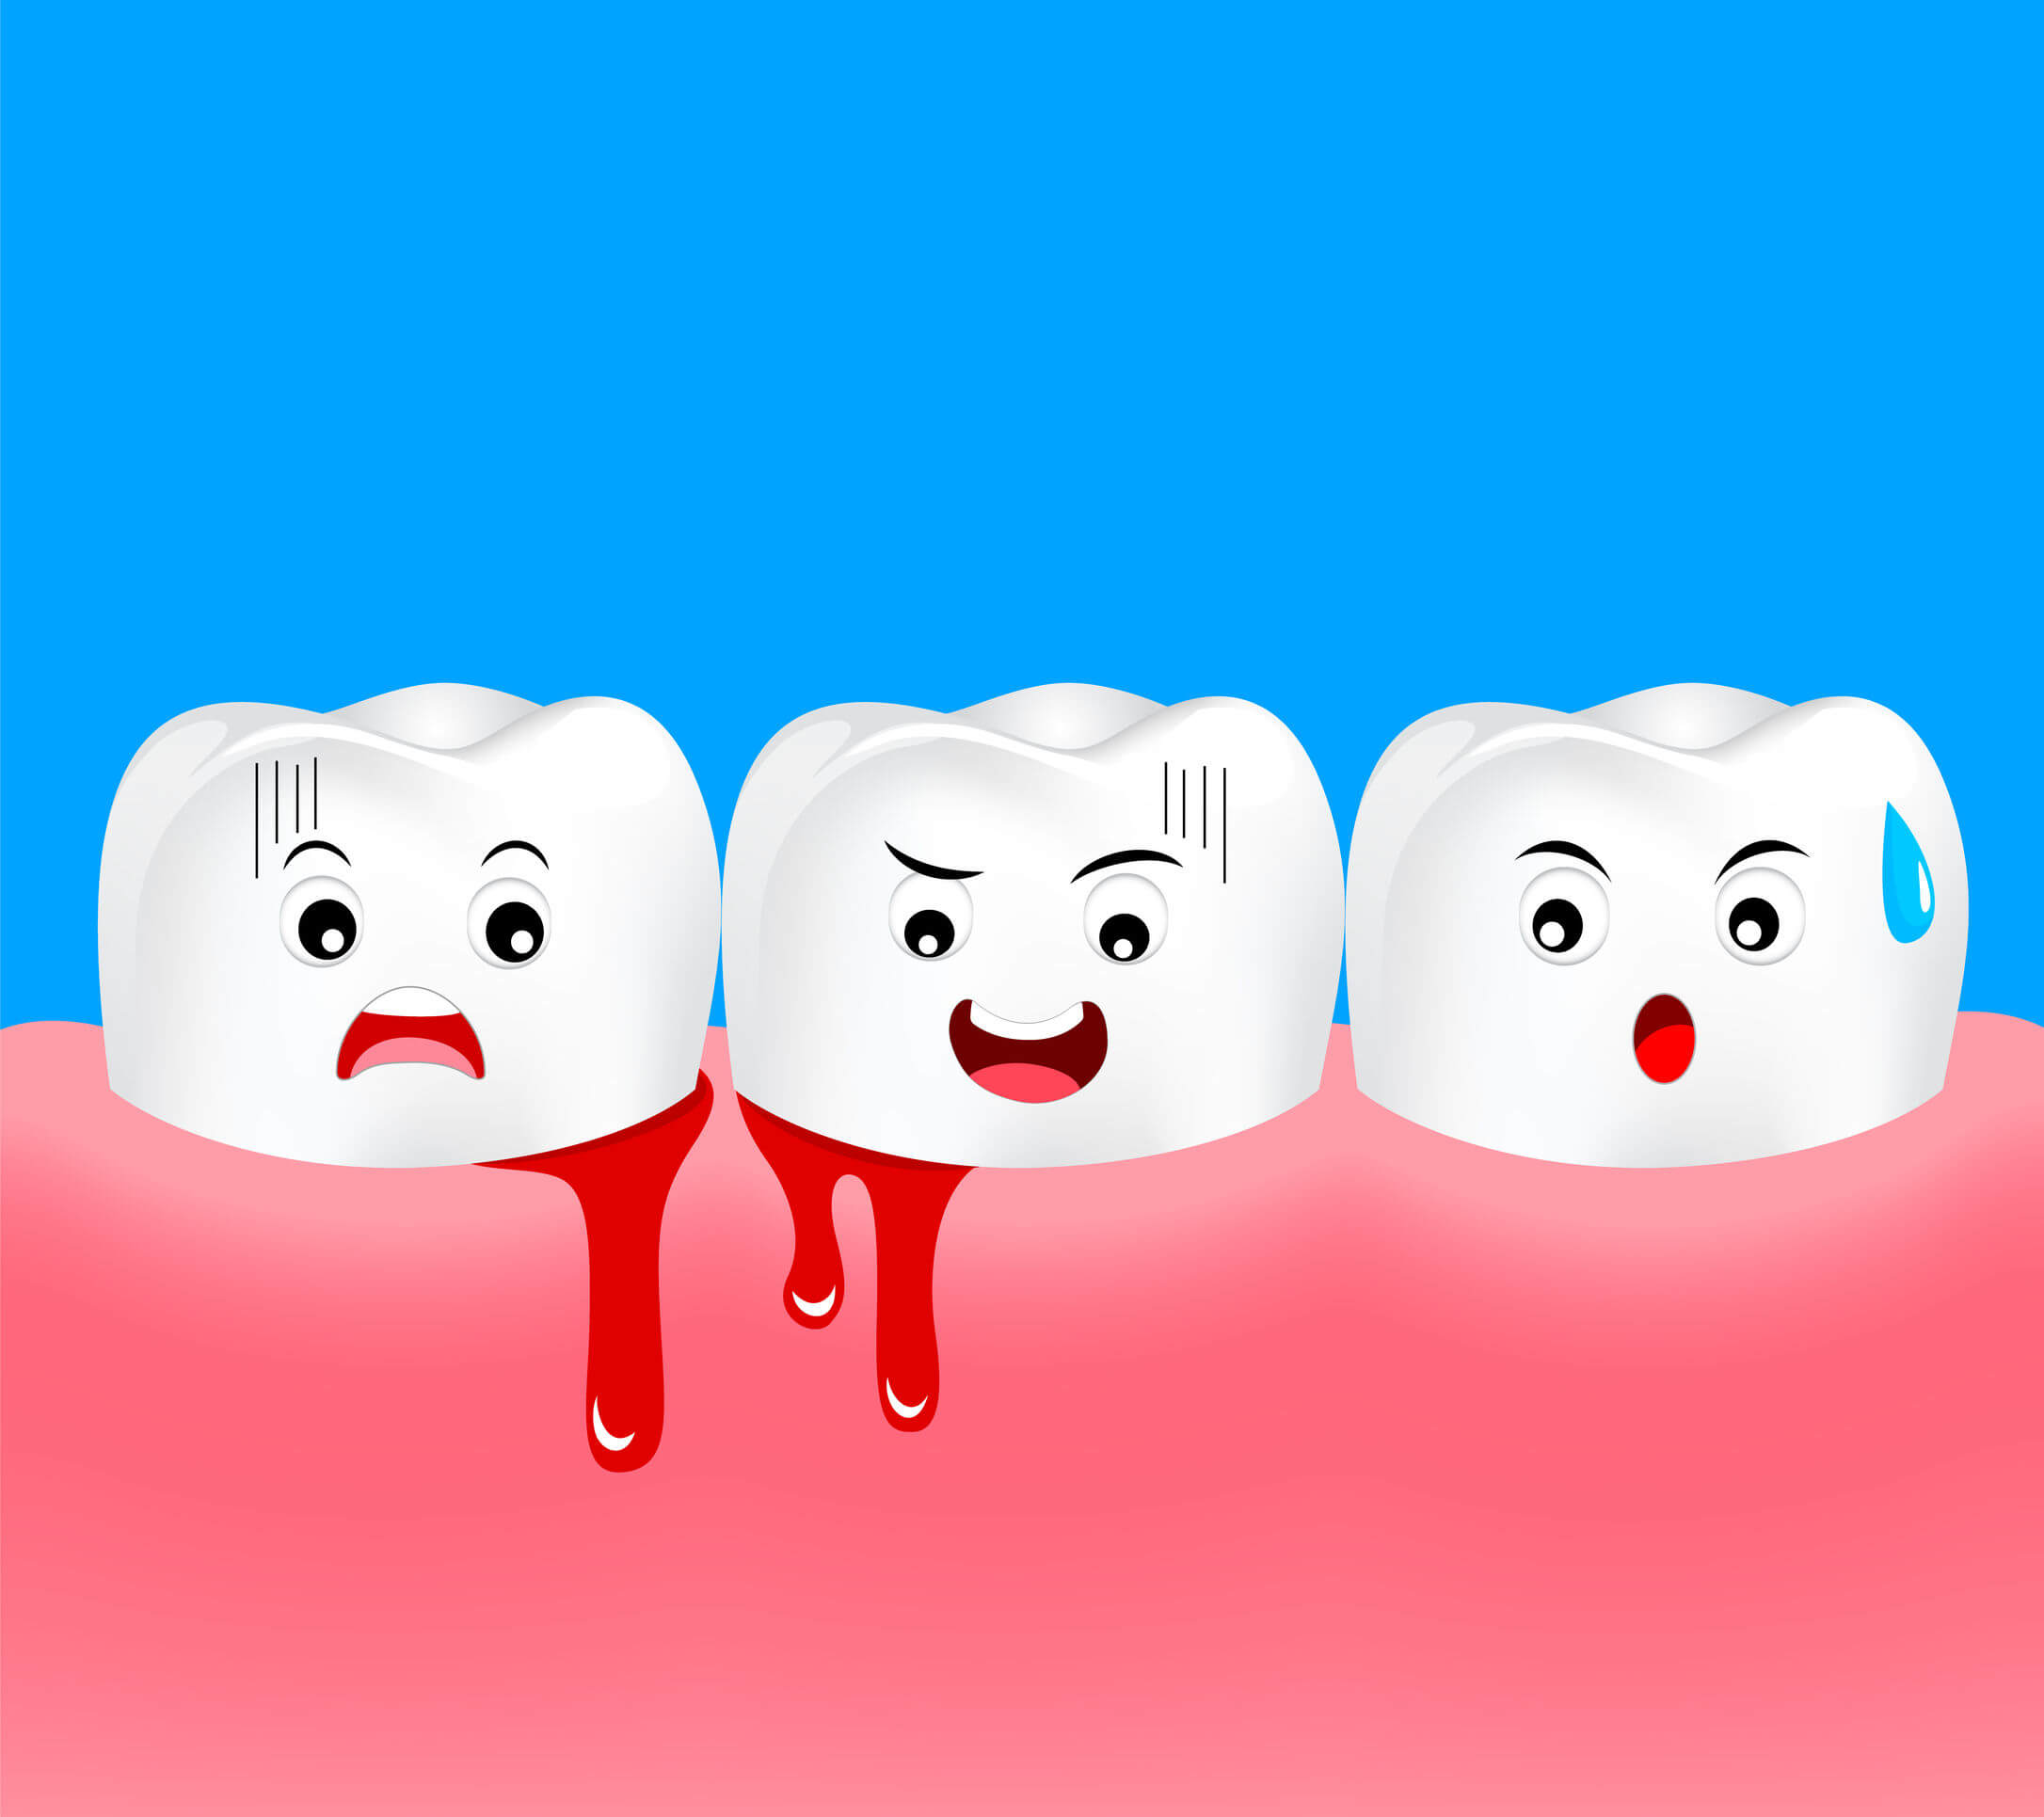 La gingivitis en los niños no es tan común como en adultos, pero es necesario prevenirla con buenos hábitos de higiene oral.